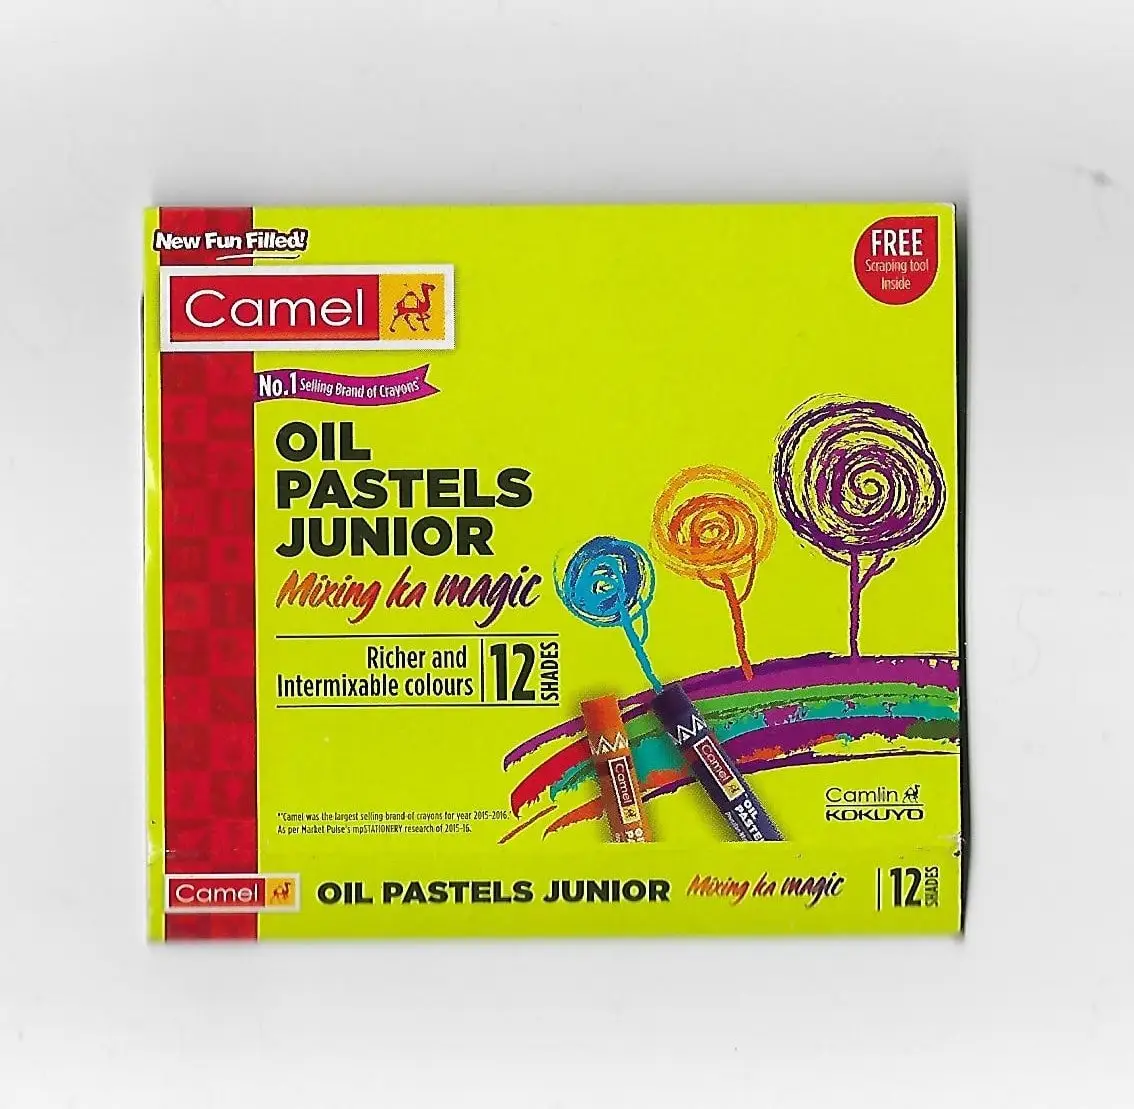 Camel Oil Pastels Junior 12 Shades